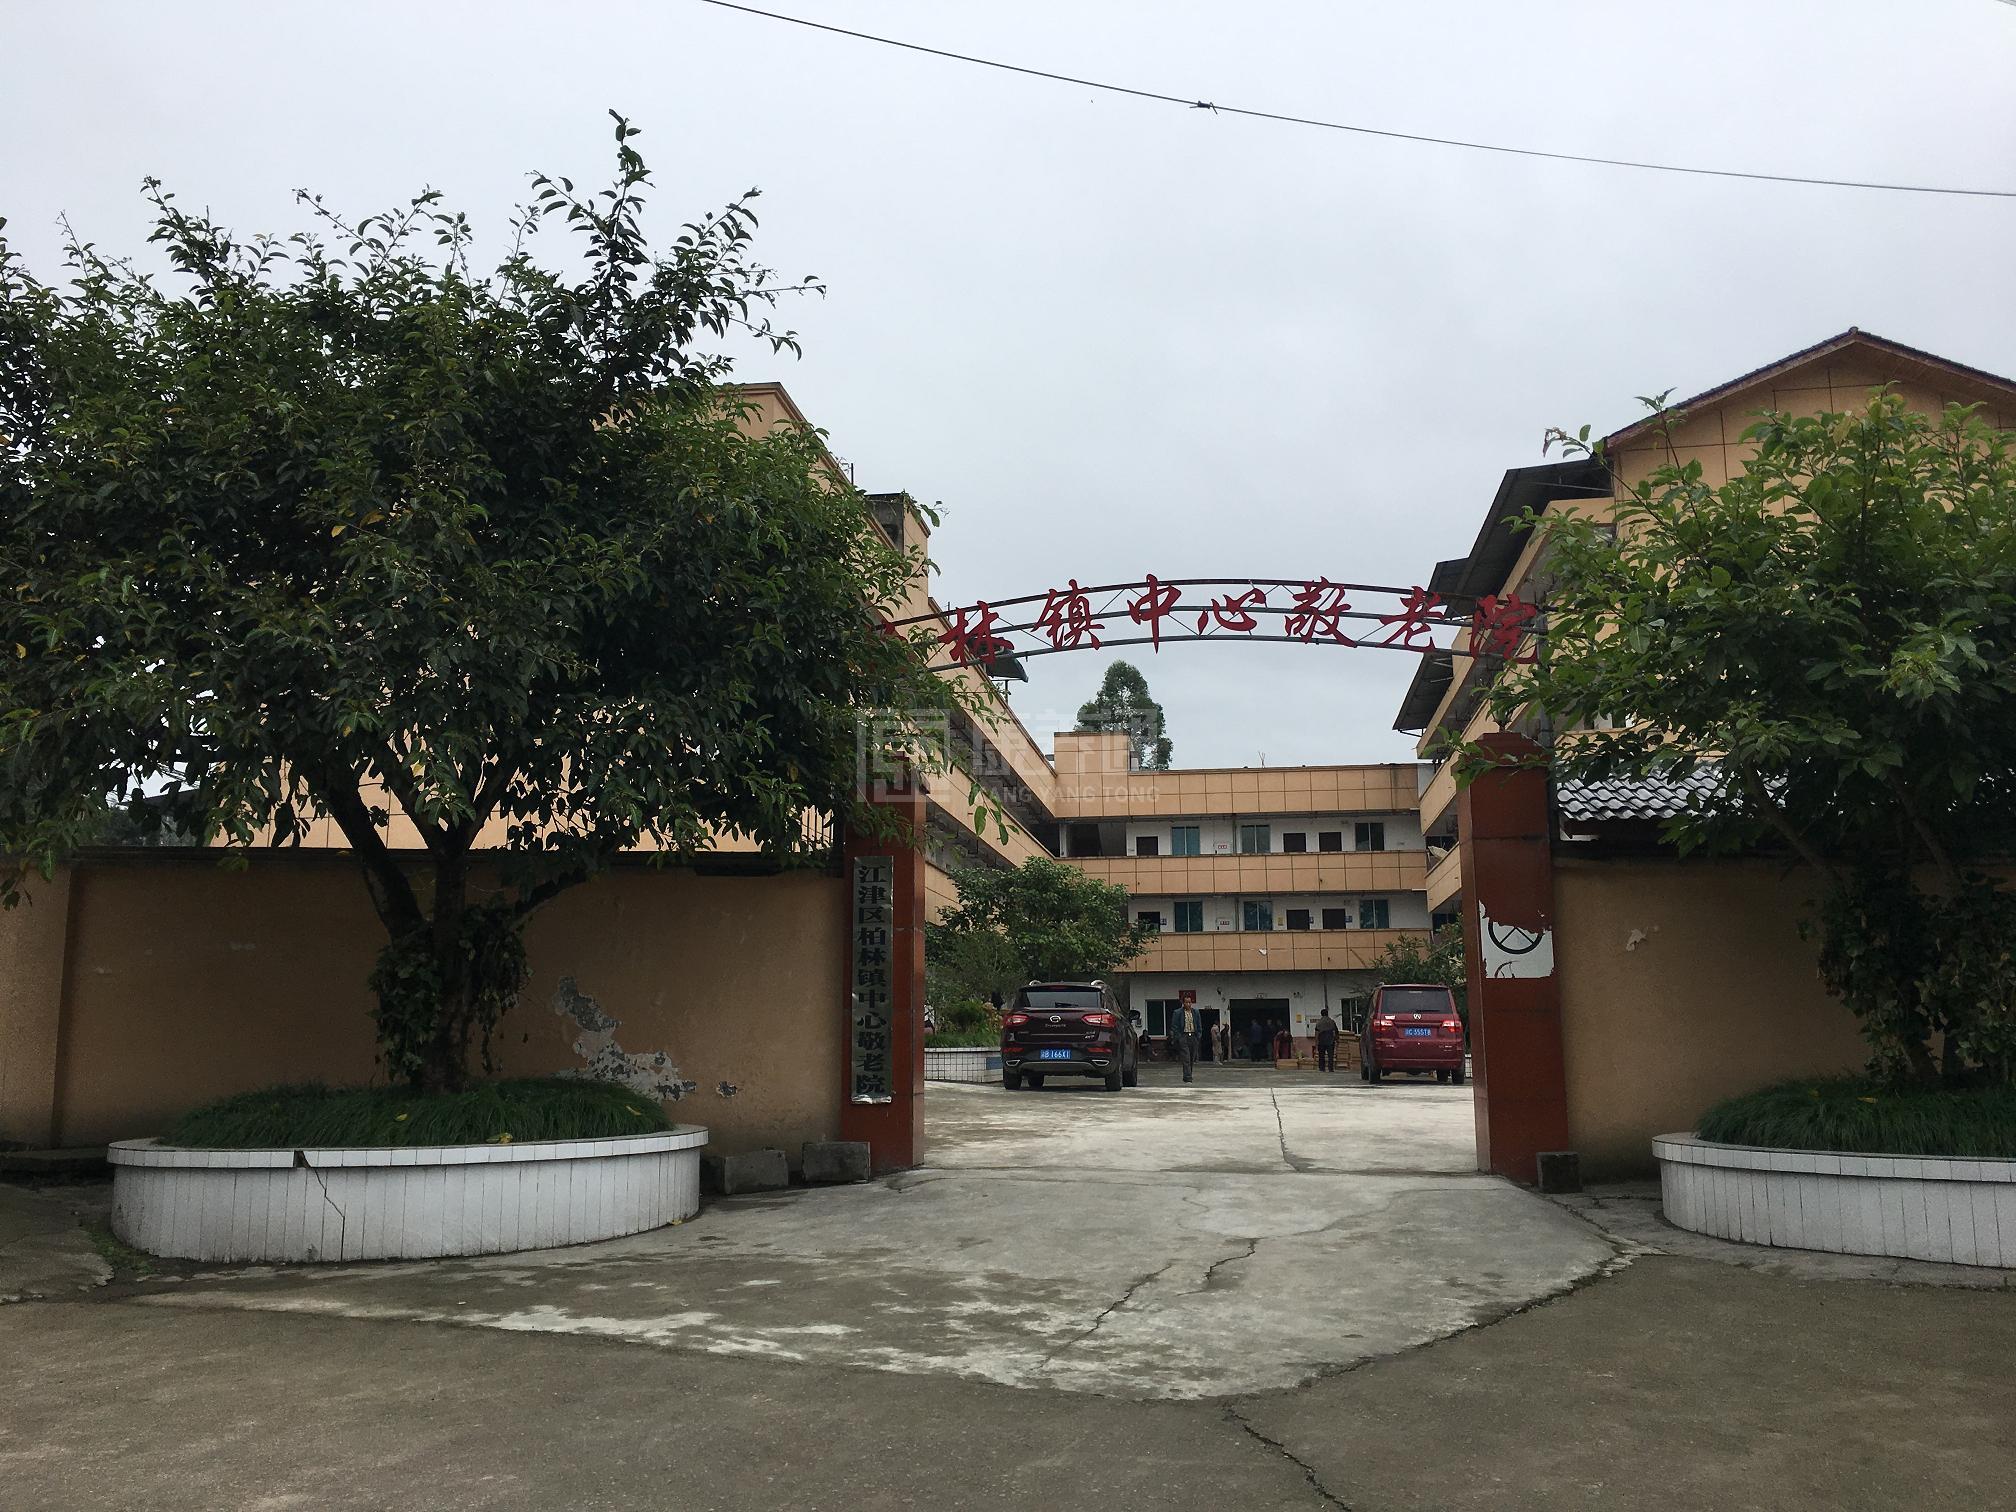 重庆市江津区柏林镇中心敬老院服务项目图3惬意的环境、感受岁月静好